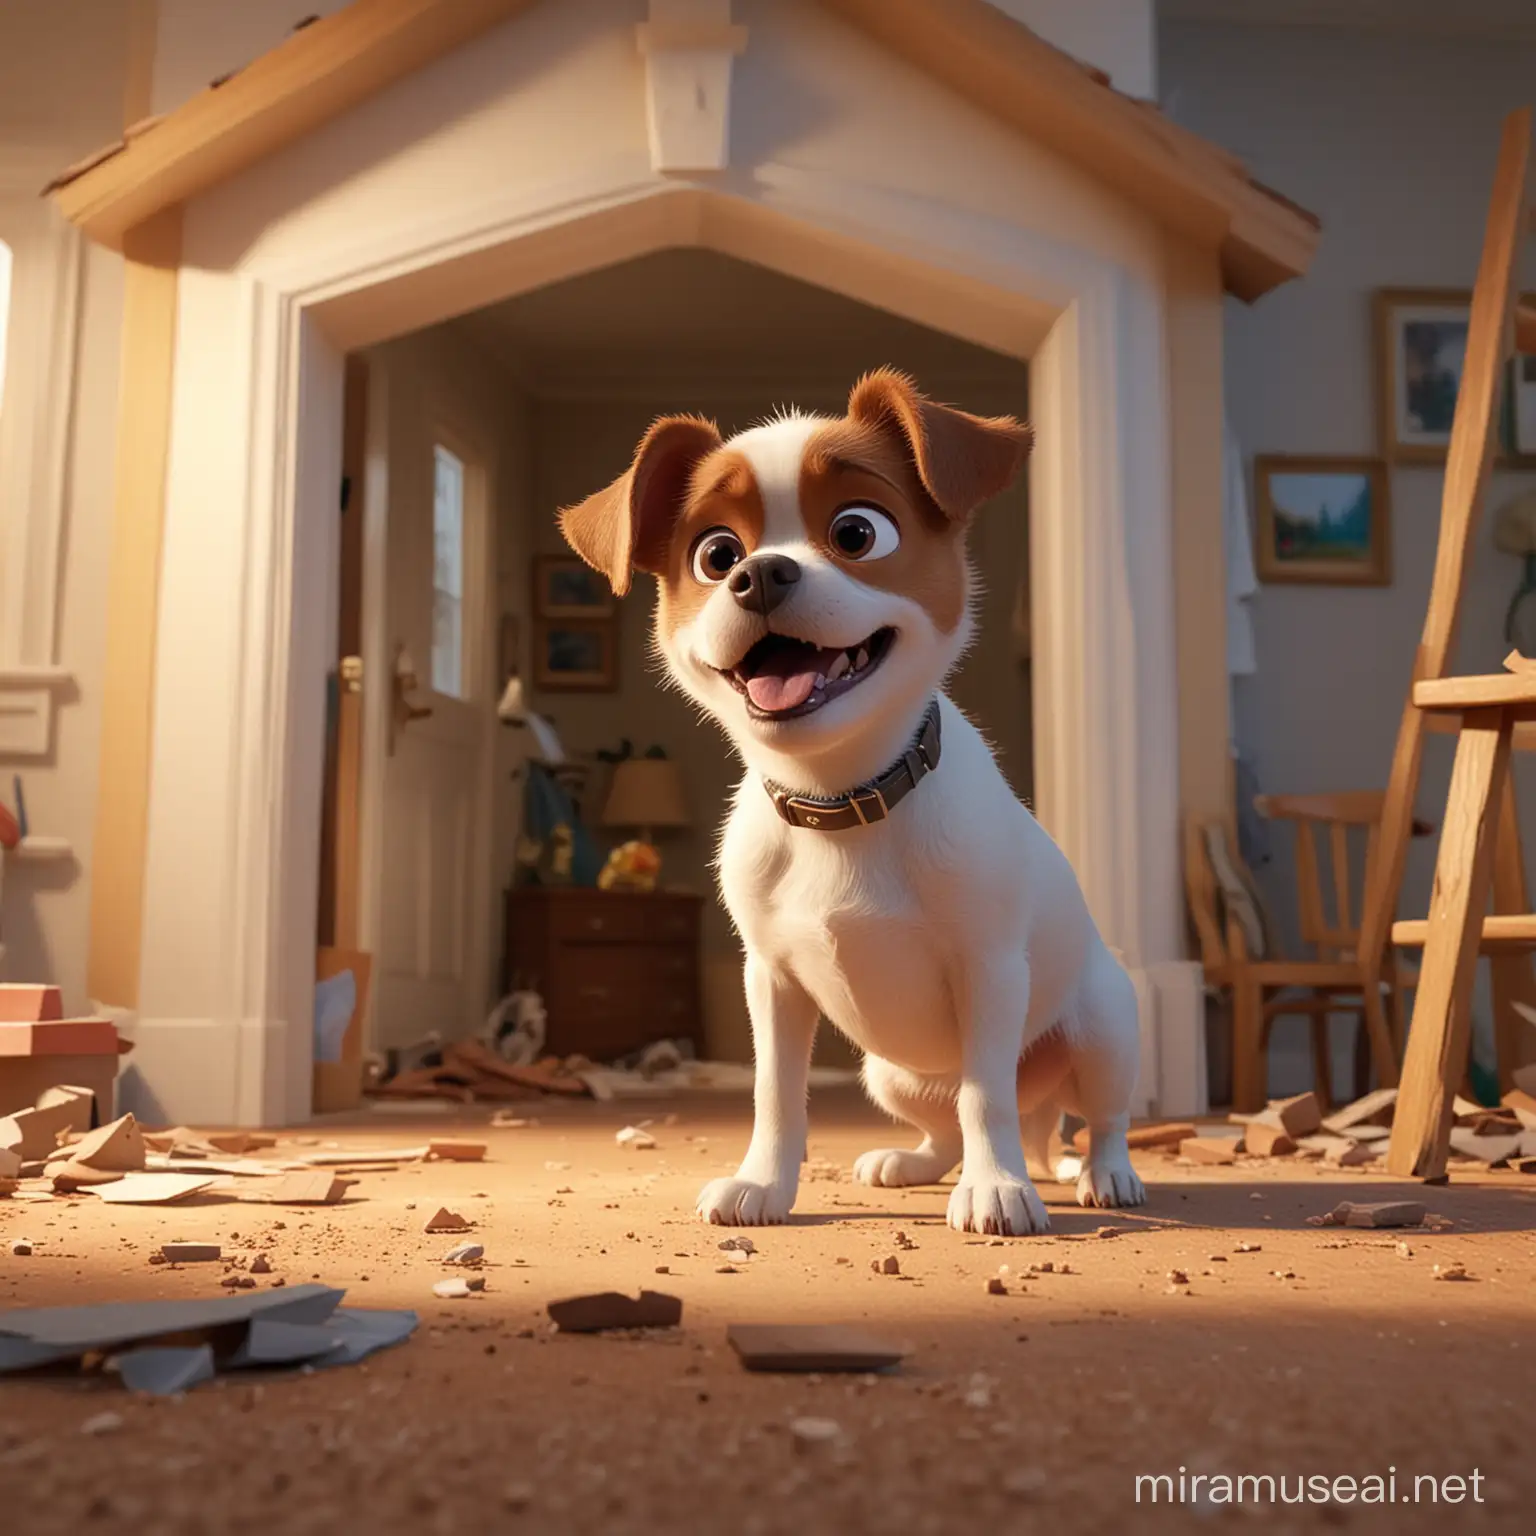 Playful Dog Destroying Home Upset Owner Scene Disney Pixar Style